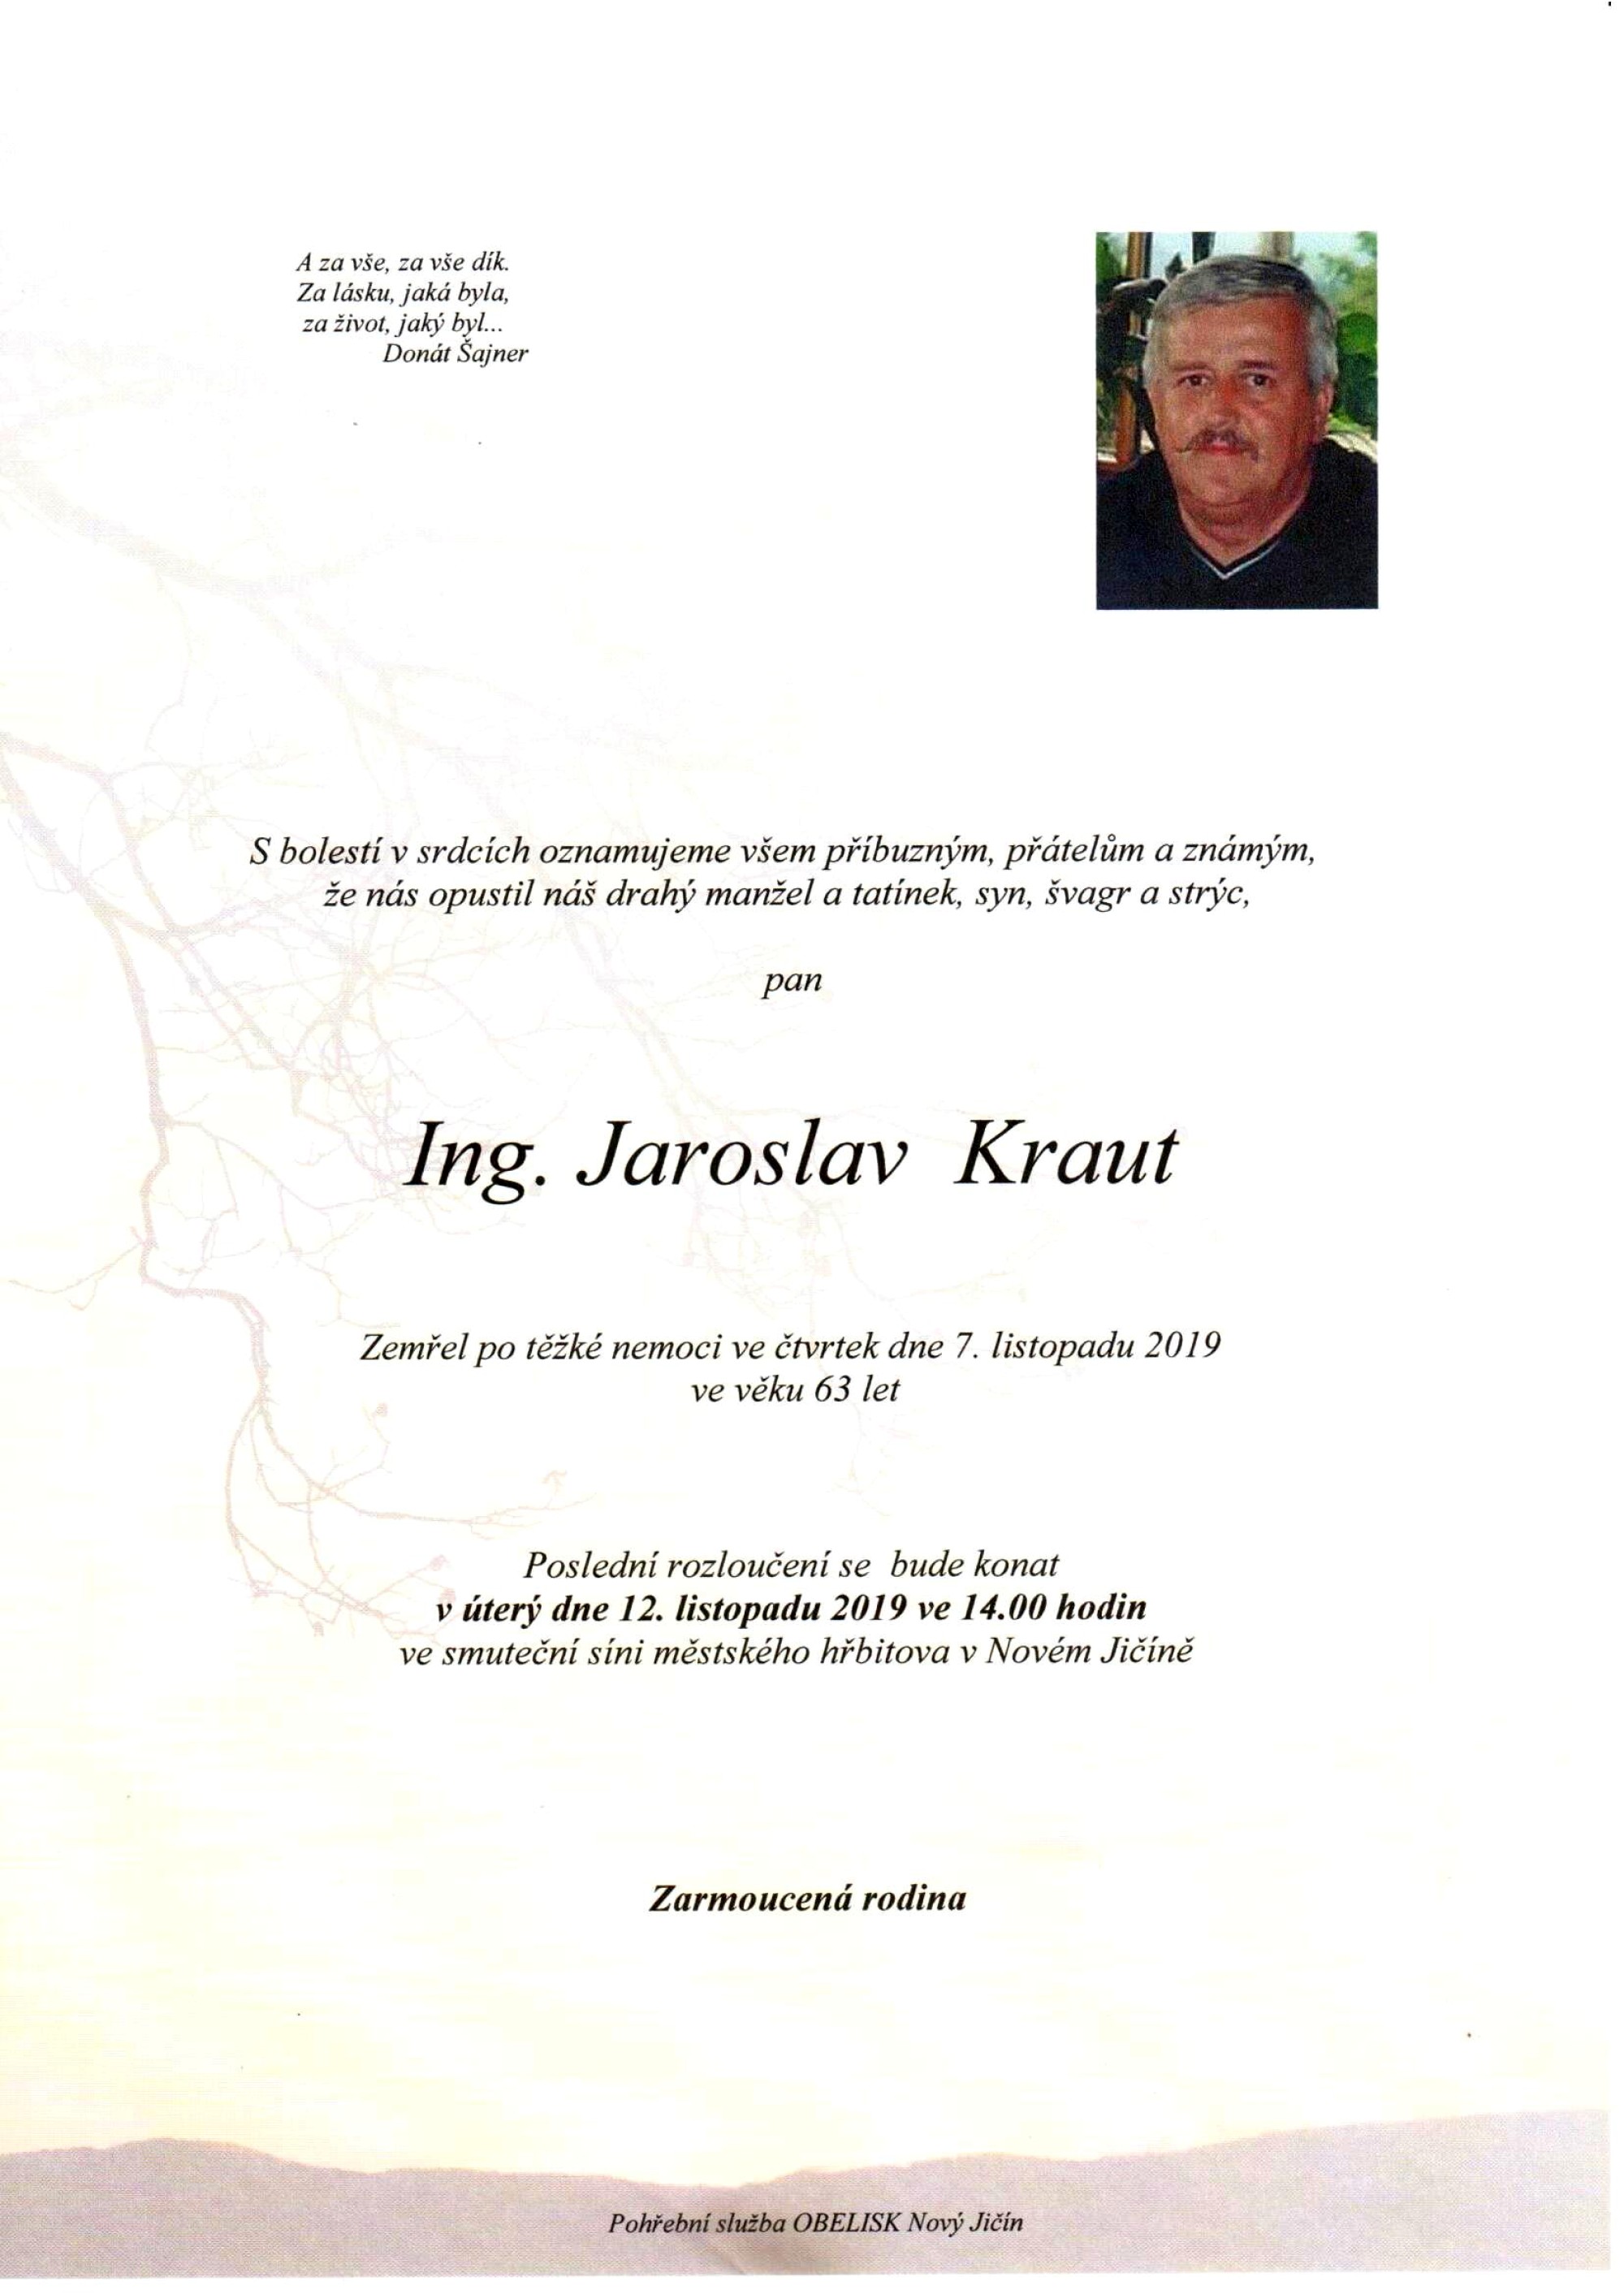 Ing. Jaroslav Kraut